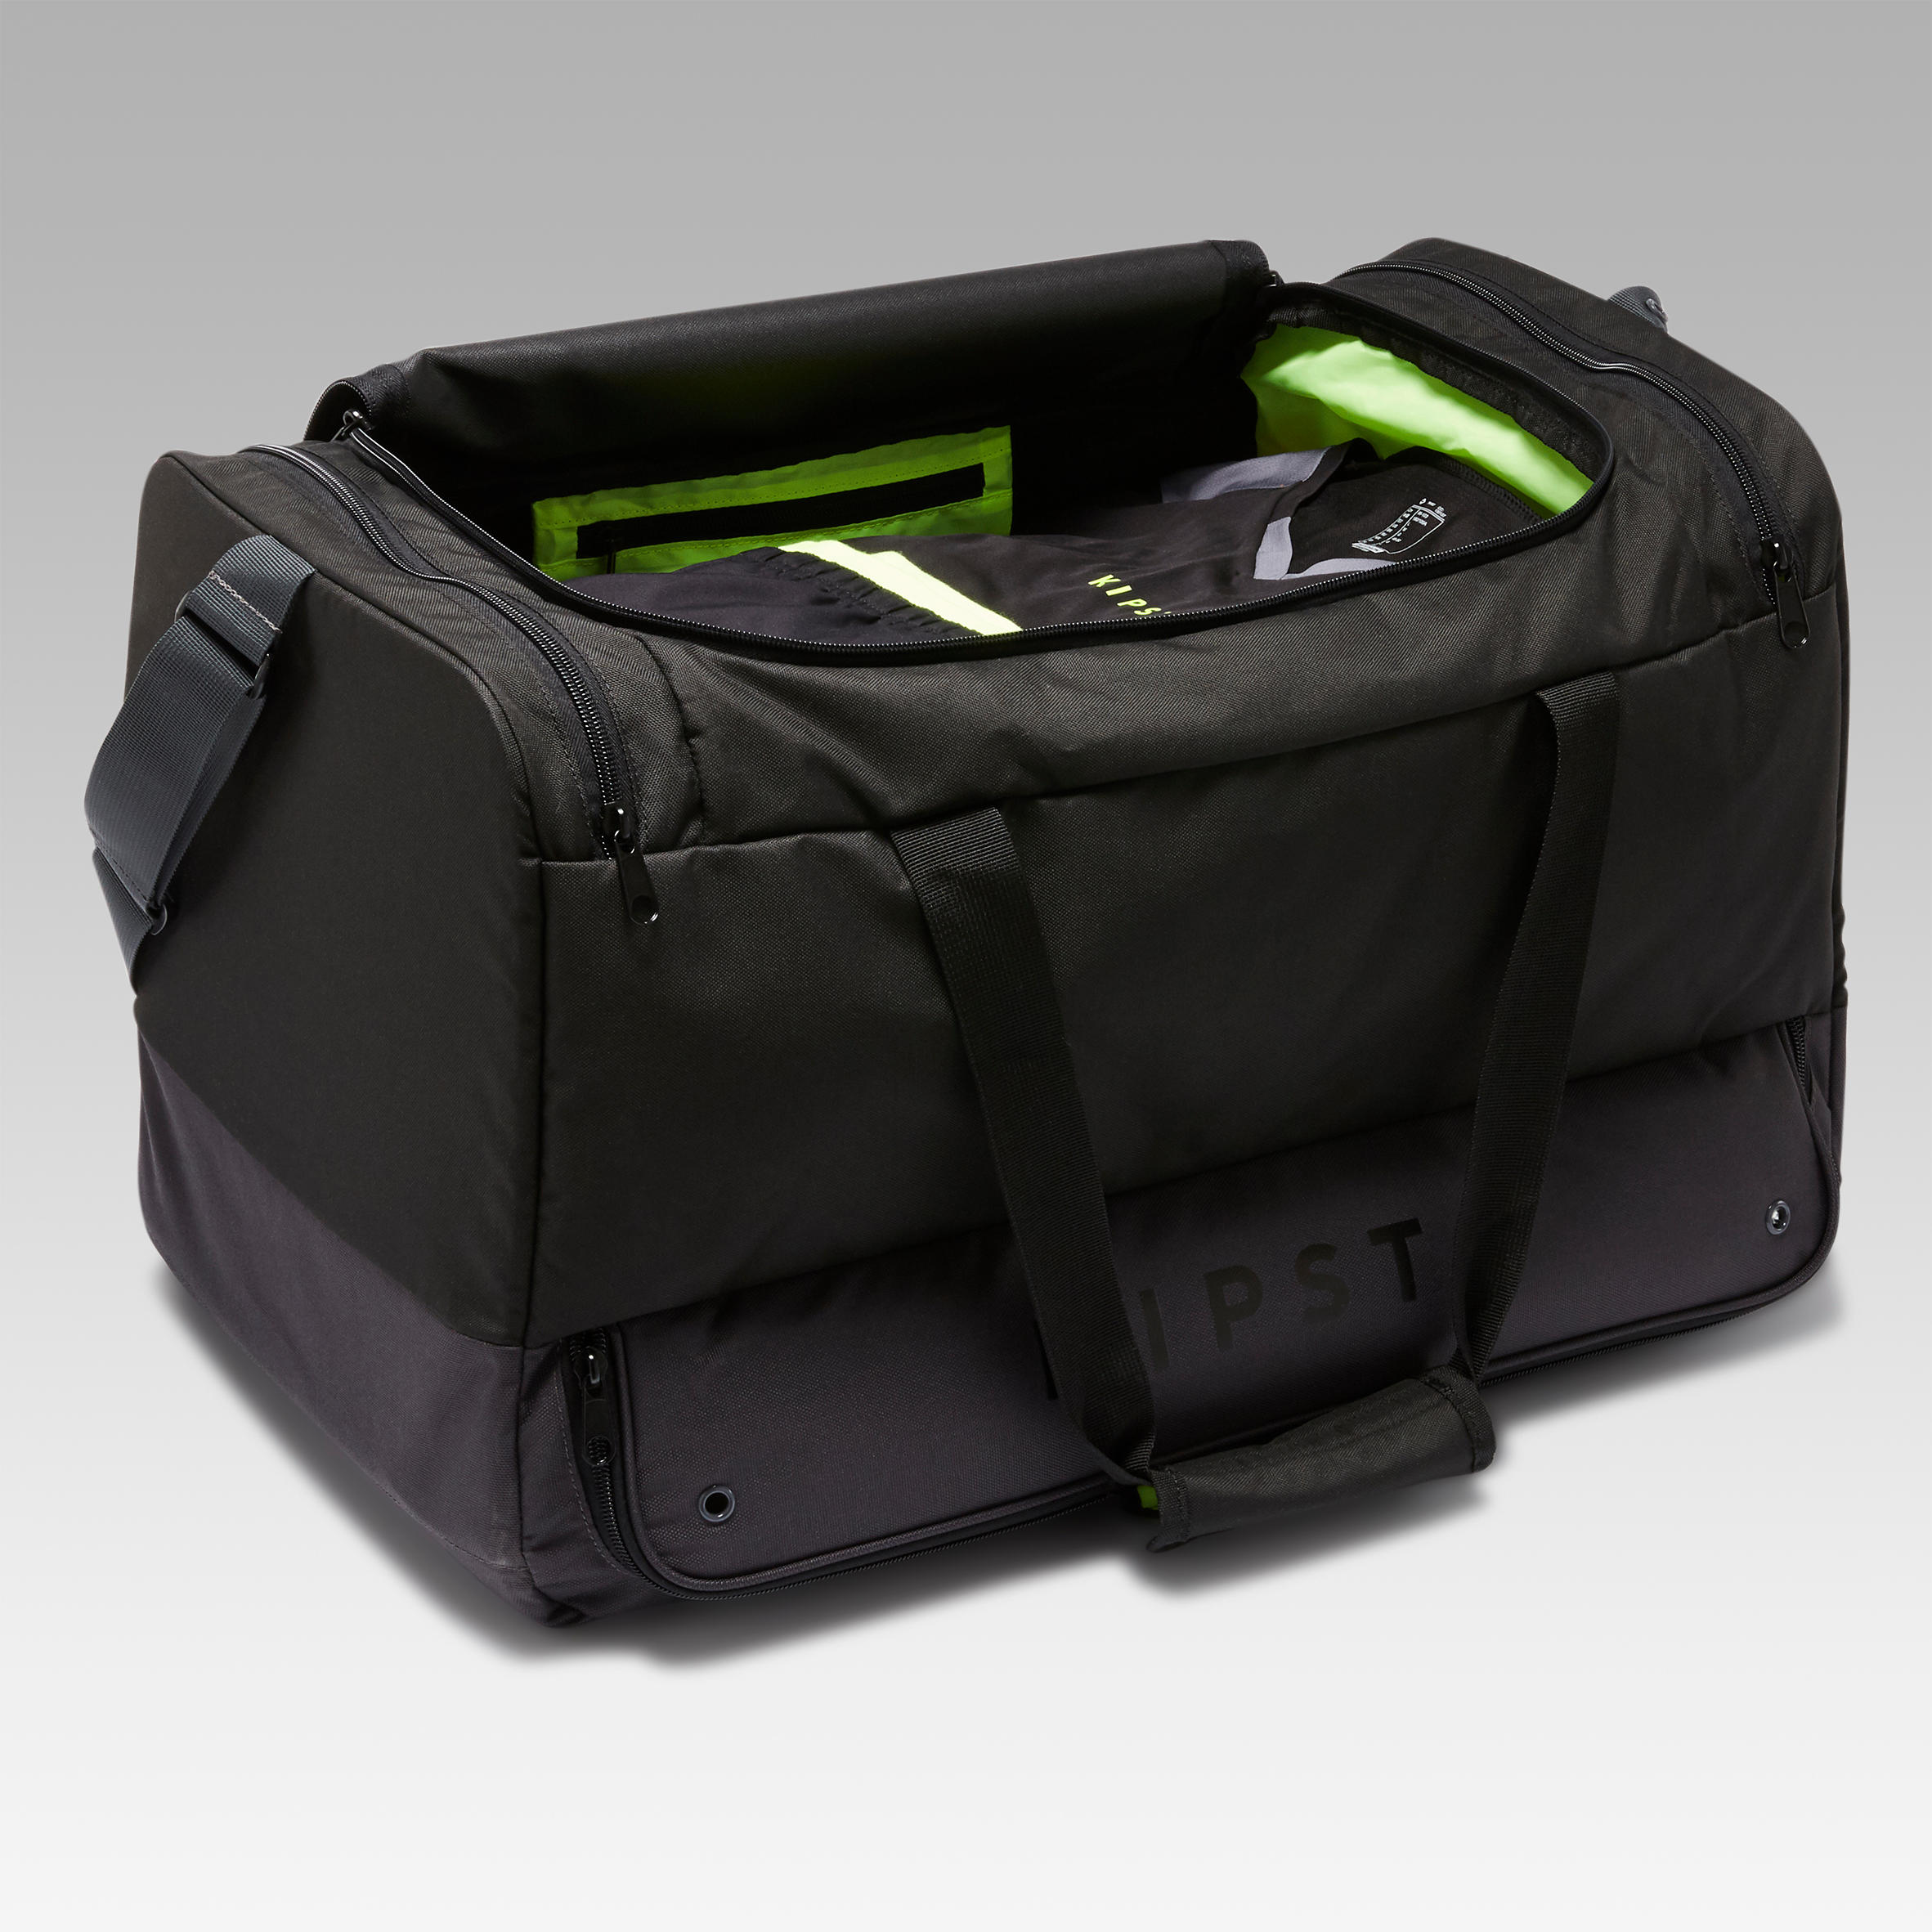 Hardcase Sports Bag 75 L - KIPSTA